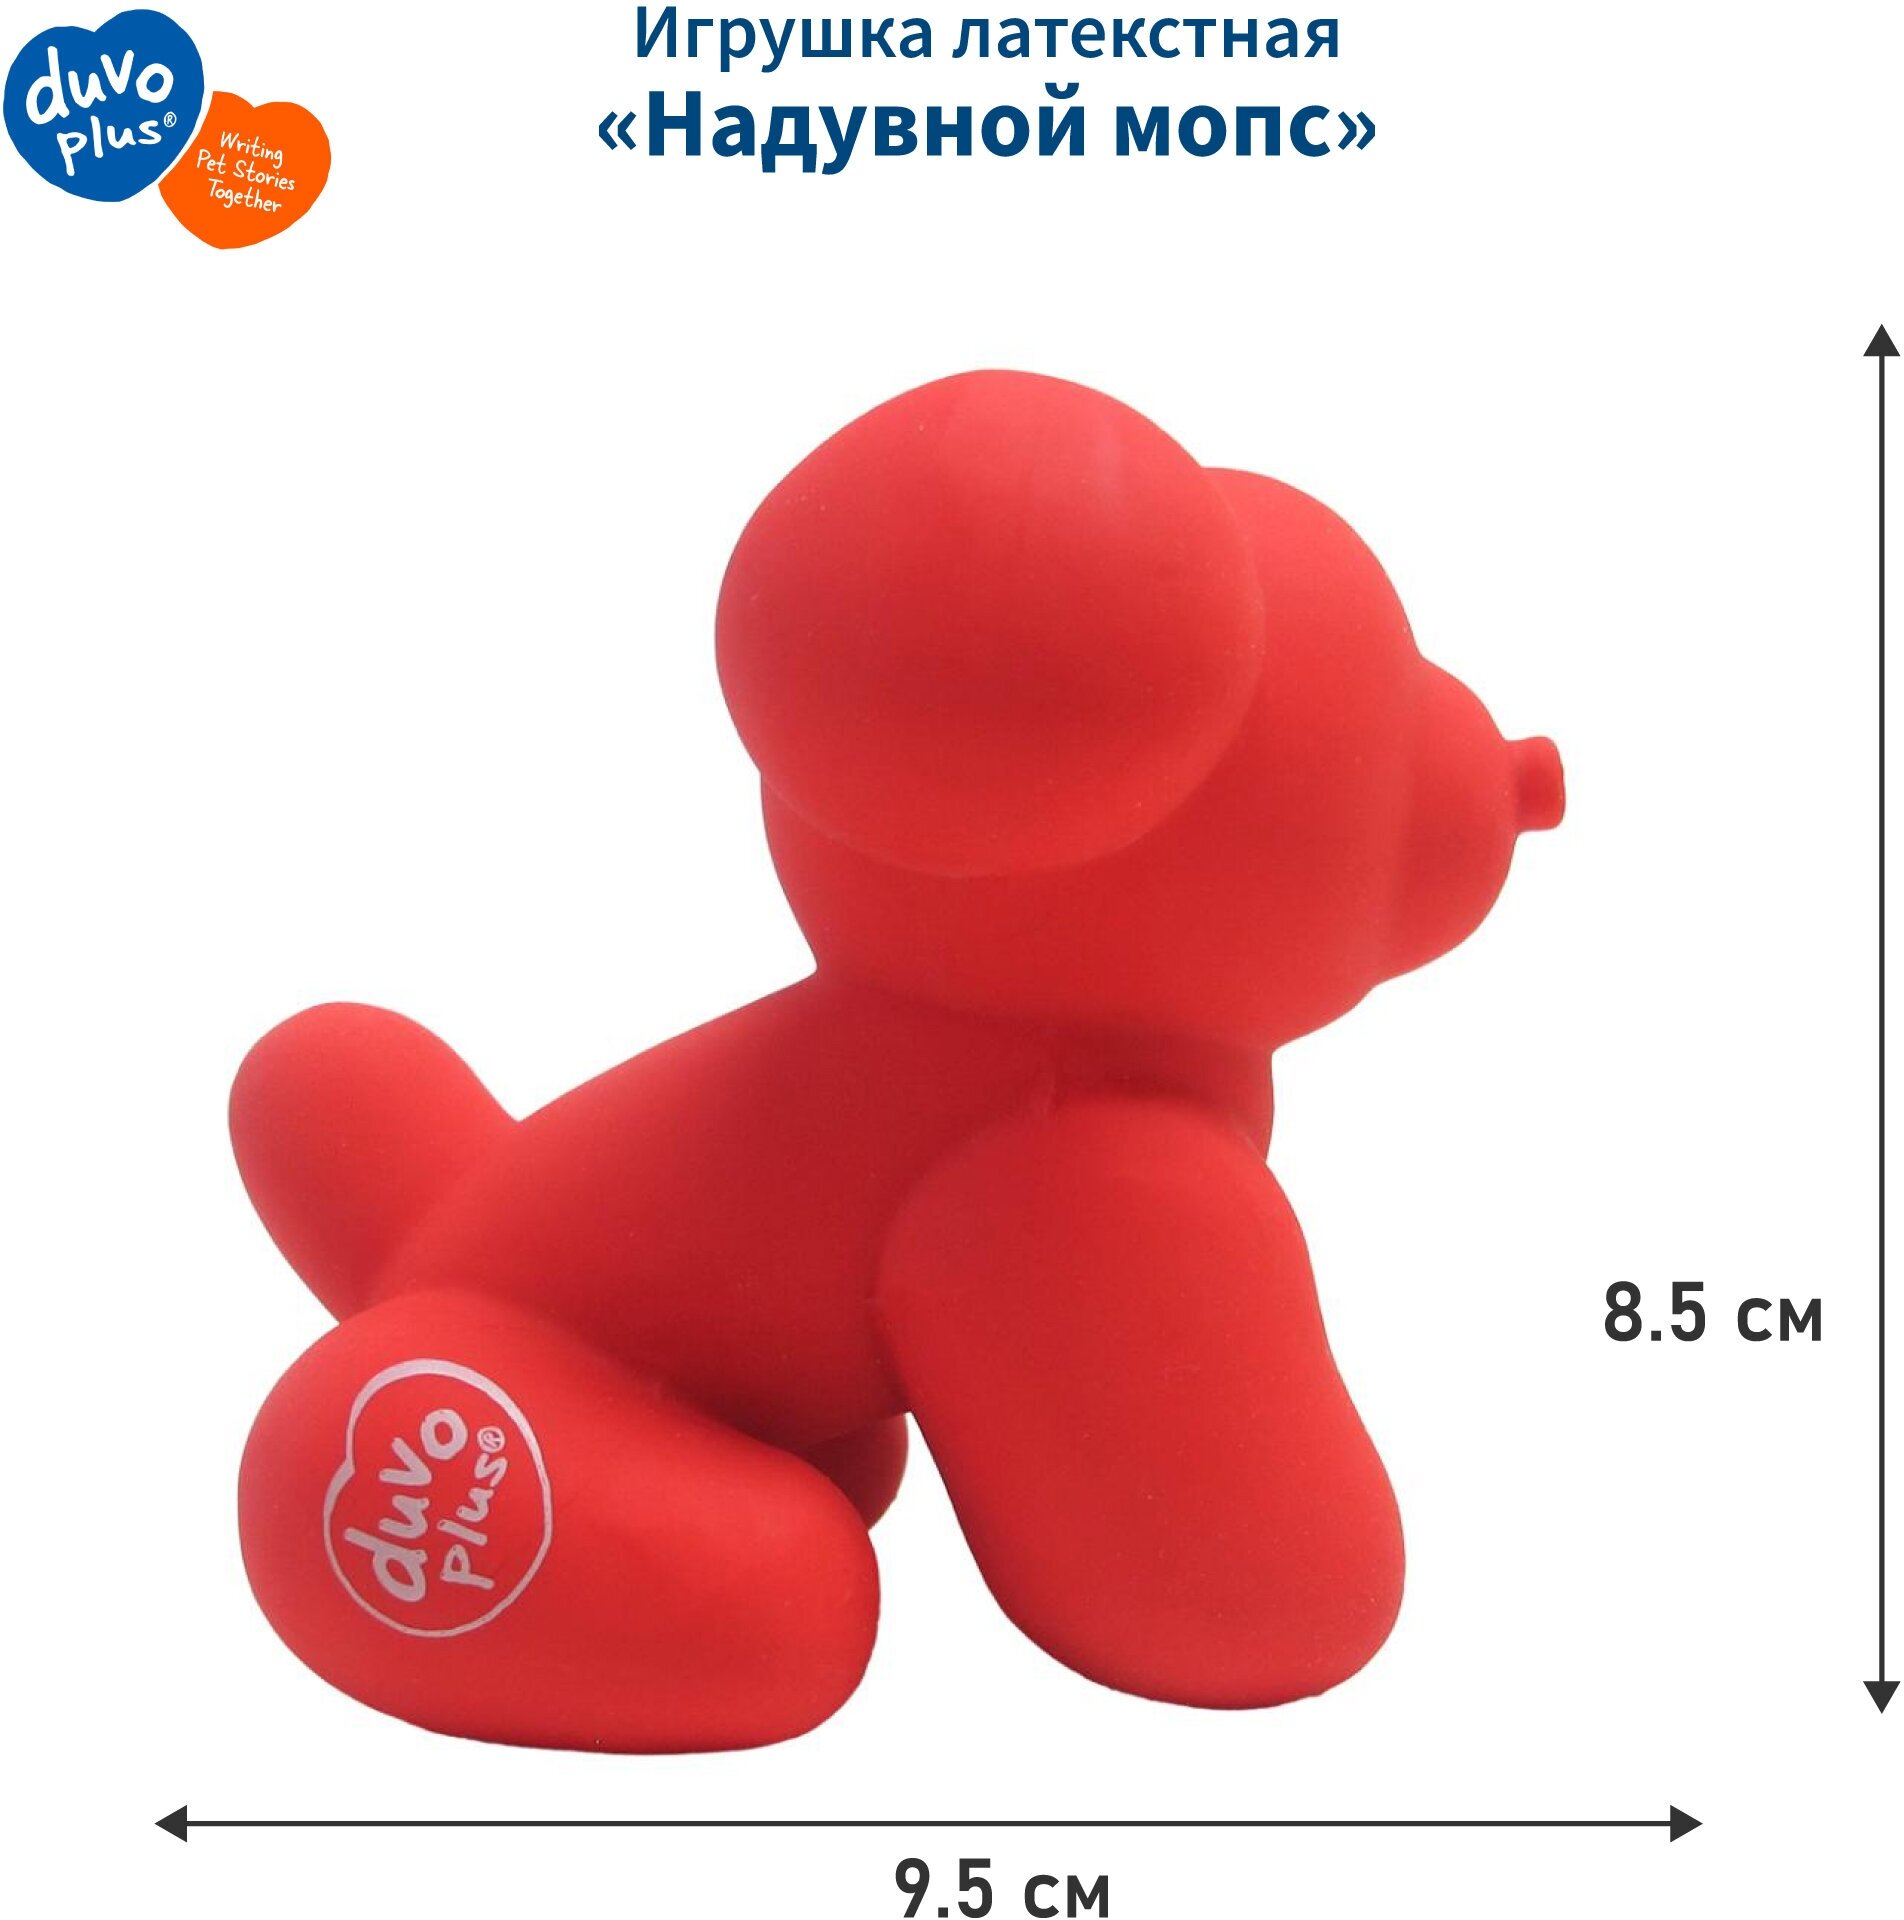 Игрушка для собак латексная DUVO+ "Надувной мопс", красная, 9.5x6x8.5см (Бельгия) - фотография № 1